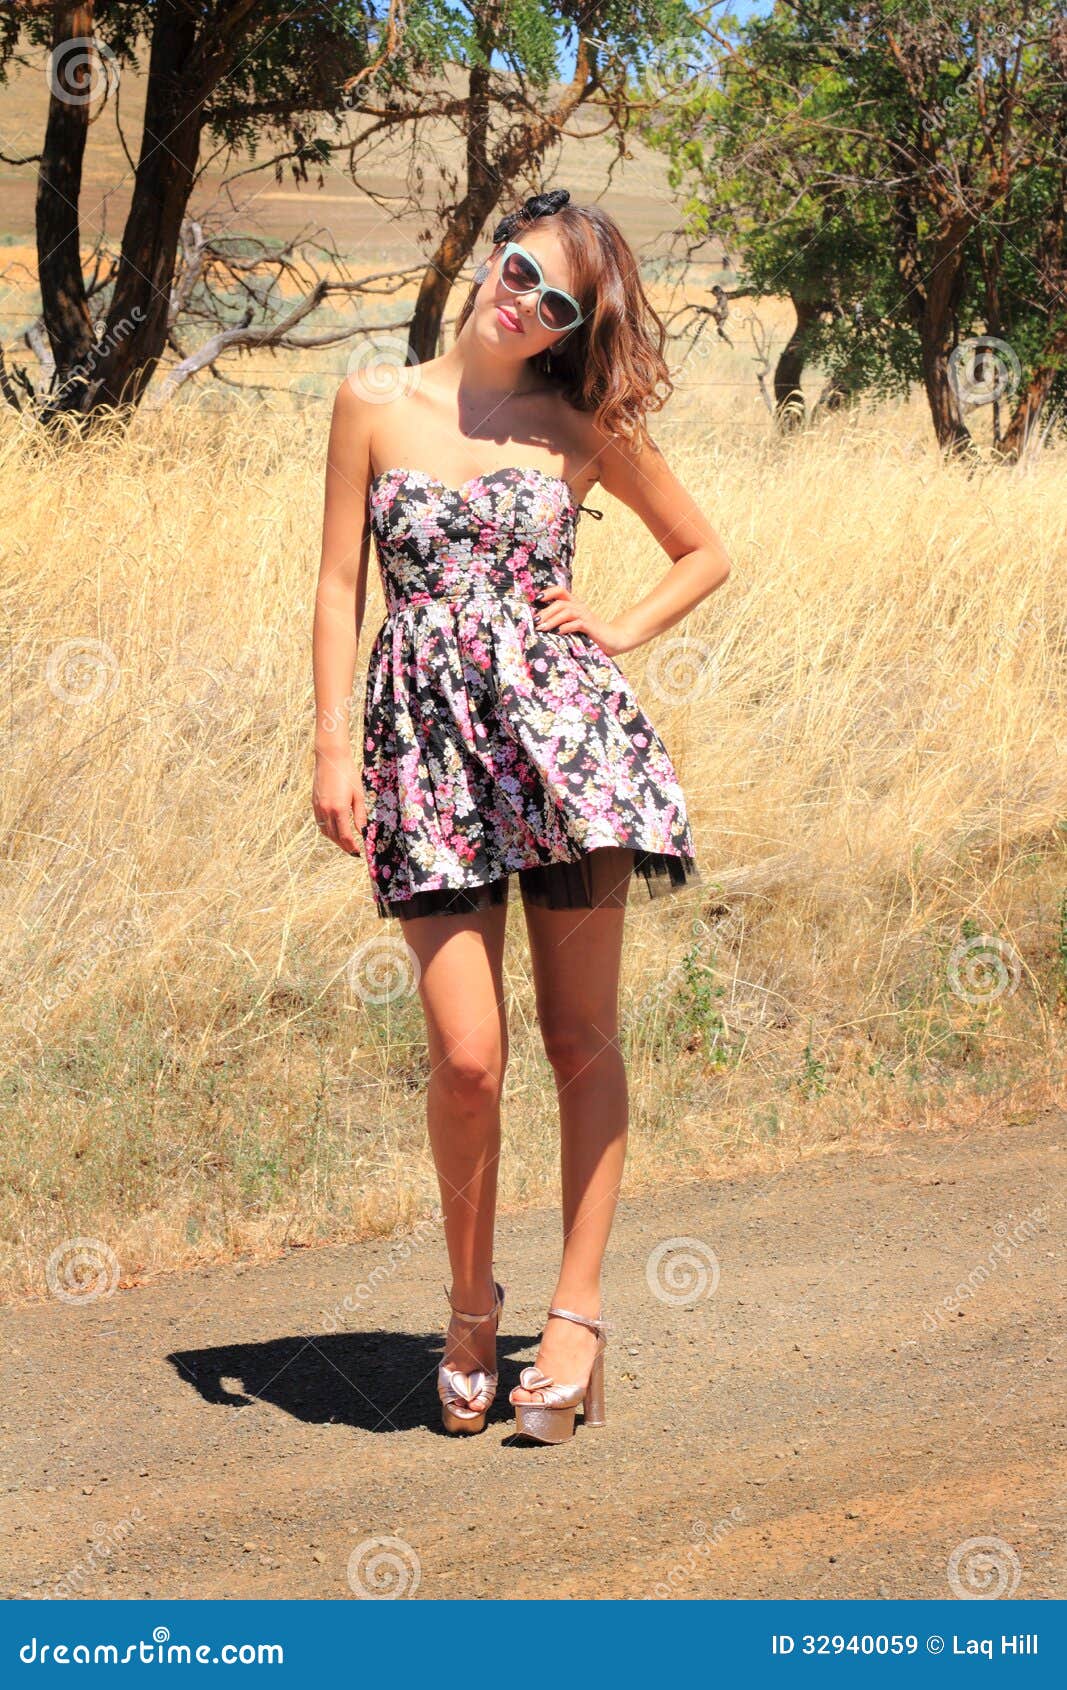 country girl sundress